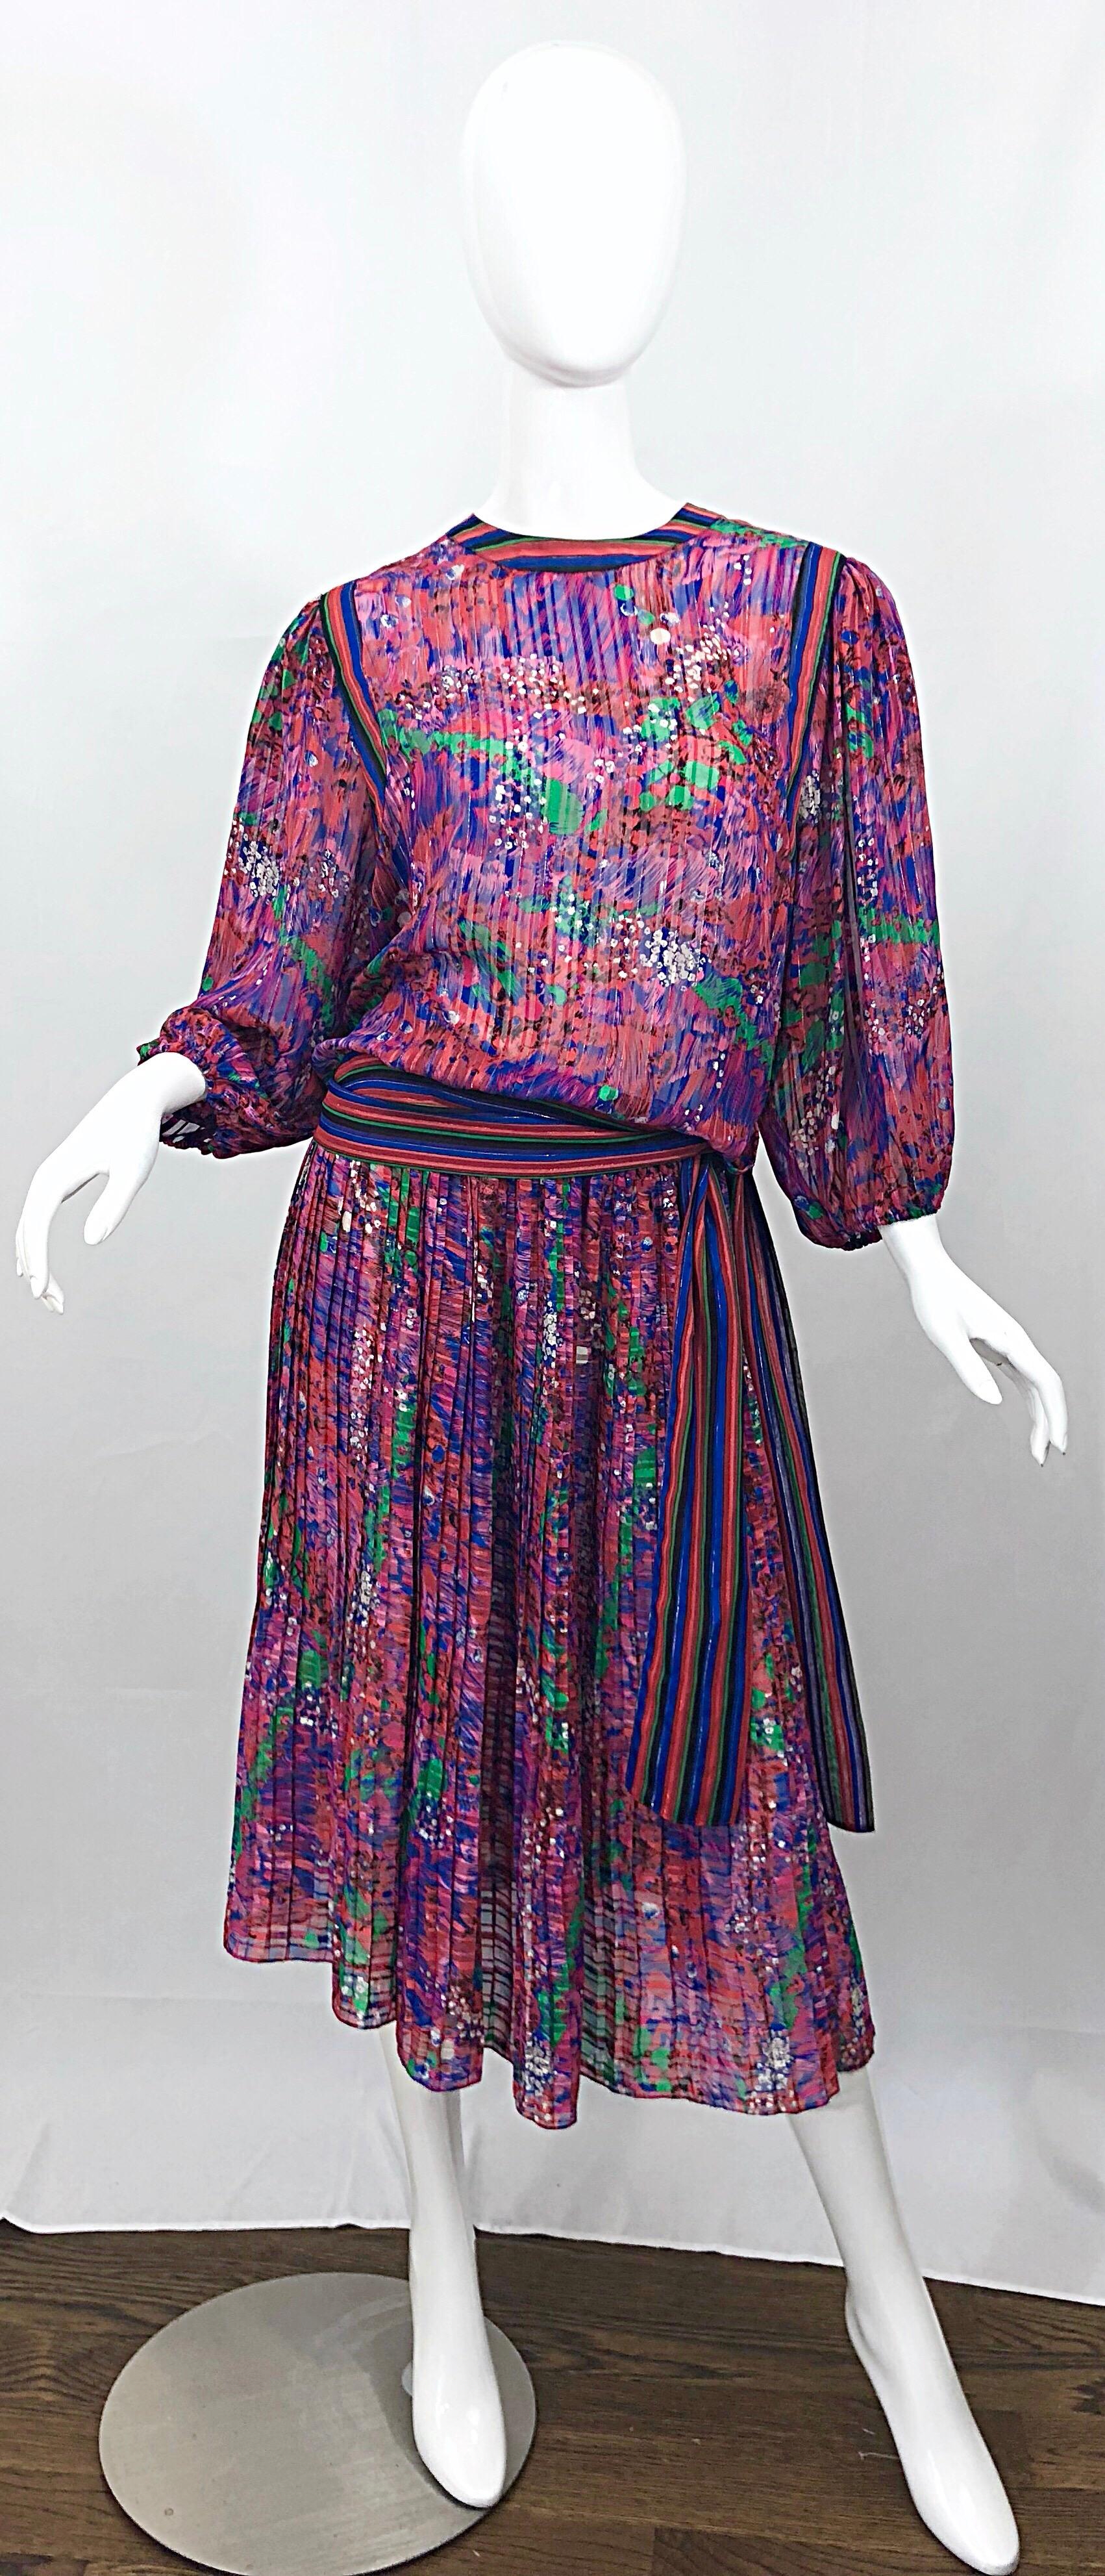 Fabuleuse robe deux pièces vintage DIANE FREIS des années 80, avec fleurs et rayures ! Il présente des couleurs vibrantes de rose, violet, vert et bleu, avec des fils métalliques partout. La signature Diane Fres, un style facile et léger. Le